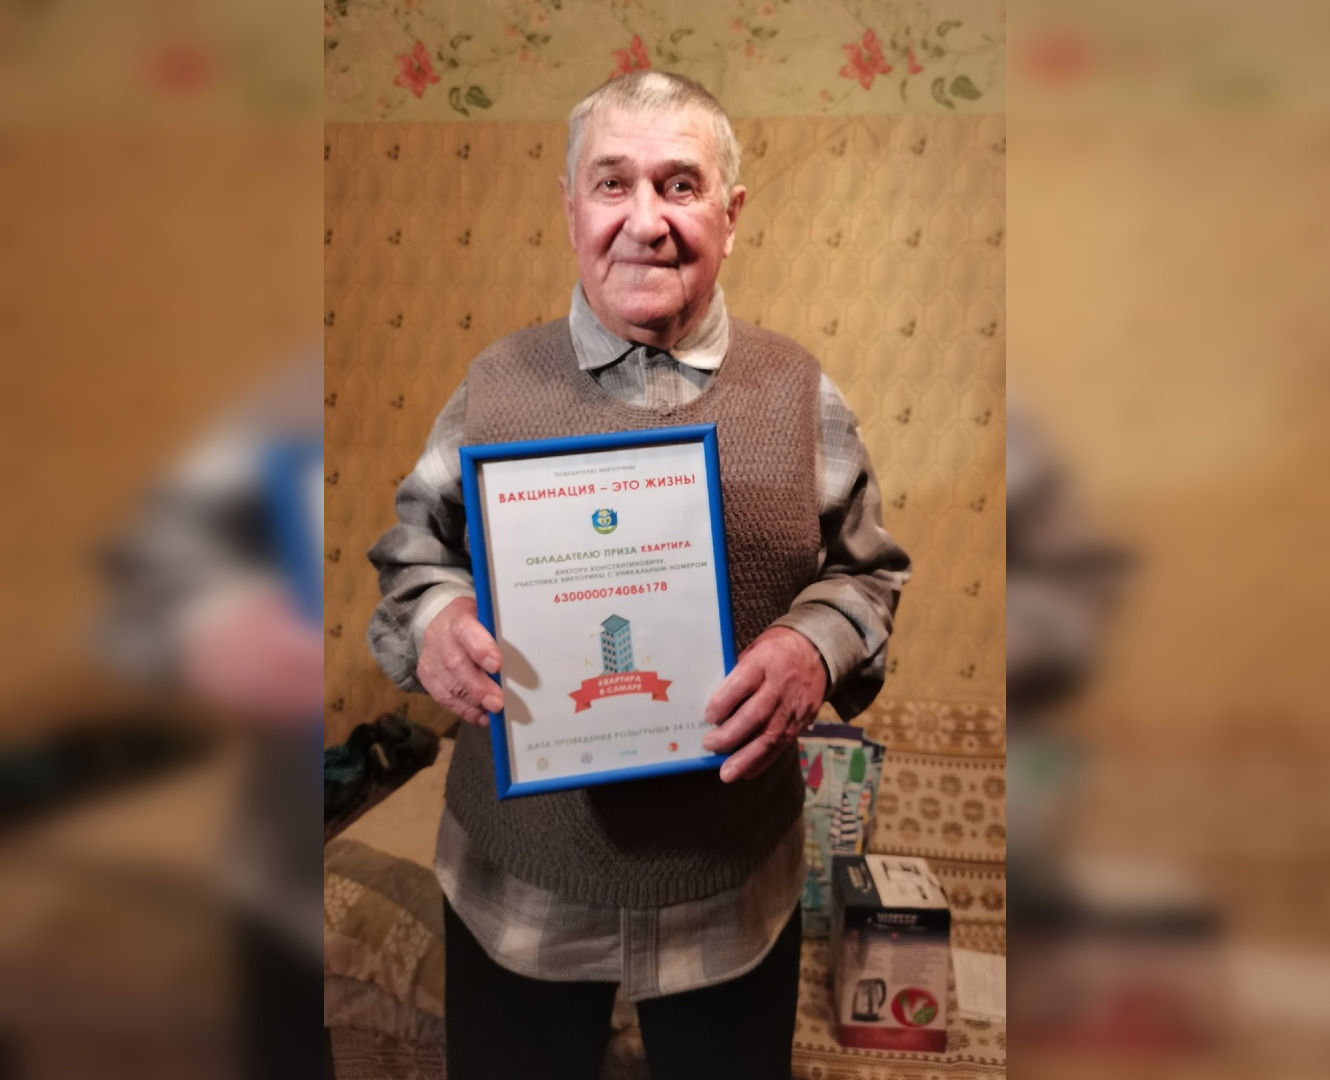 Пенсионер из Тольятти выиграл квартиру в Самаре в викторине "Вакцинация — это жизнь!"